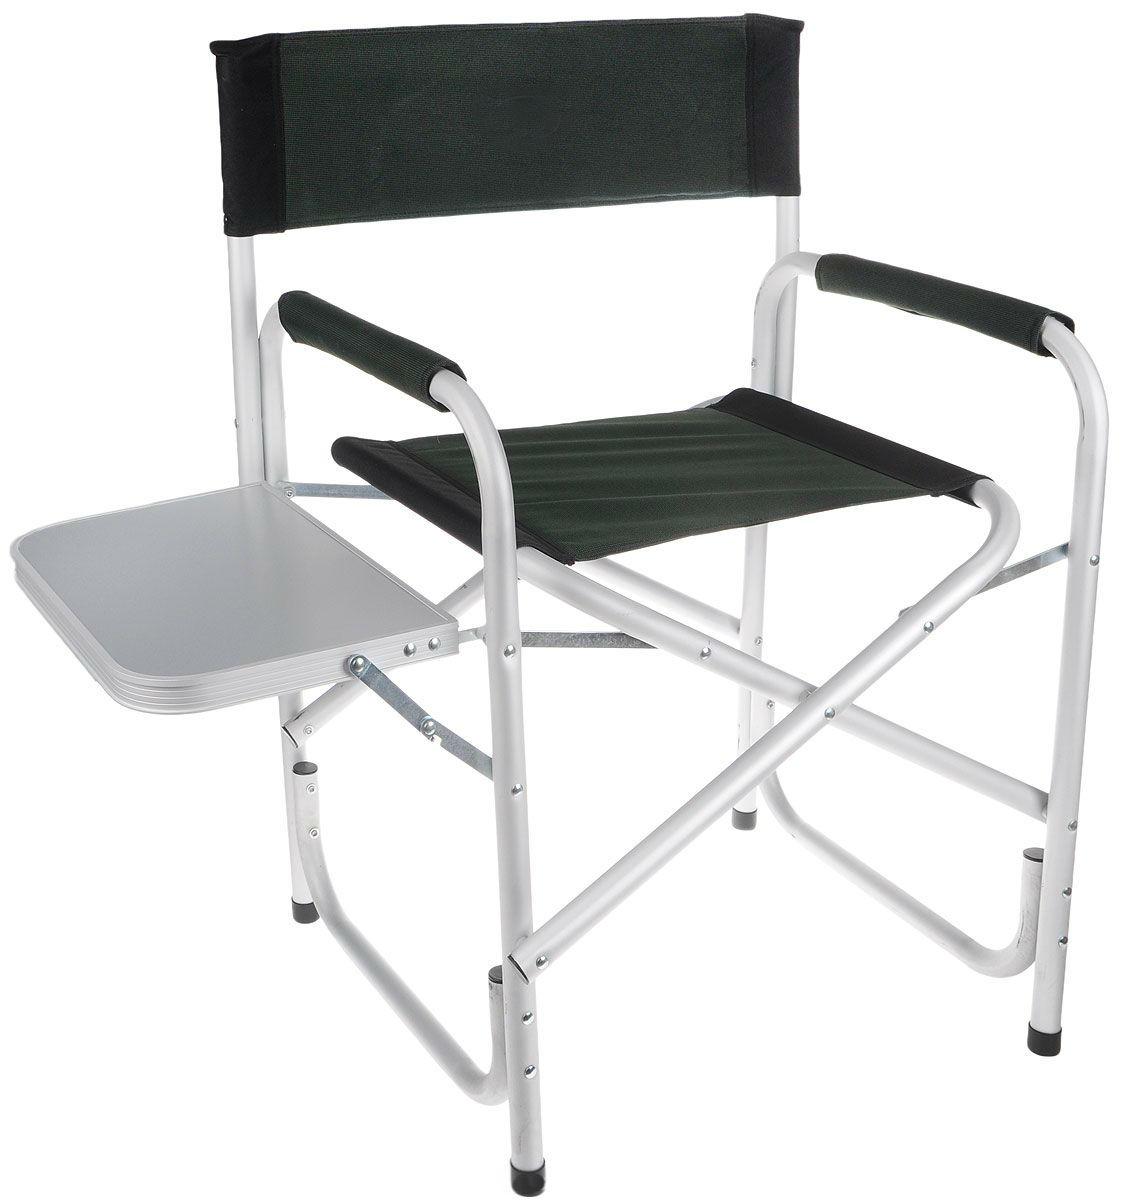 Складное алюминиевое кресло для пикника и сада Green Glade Р139 с полкой и подлокотником